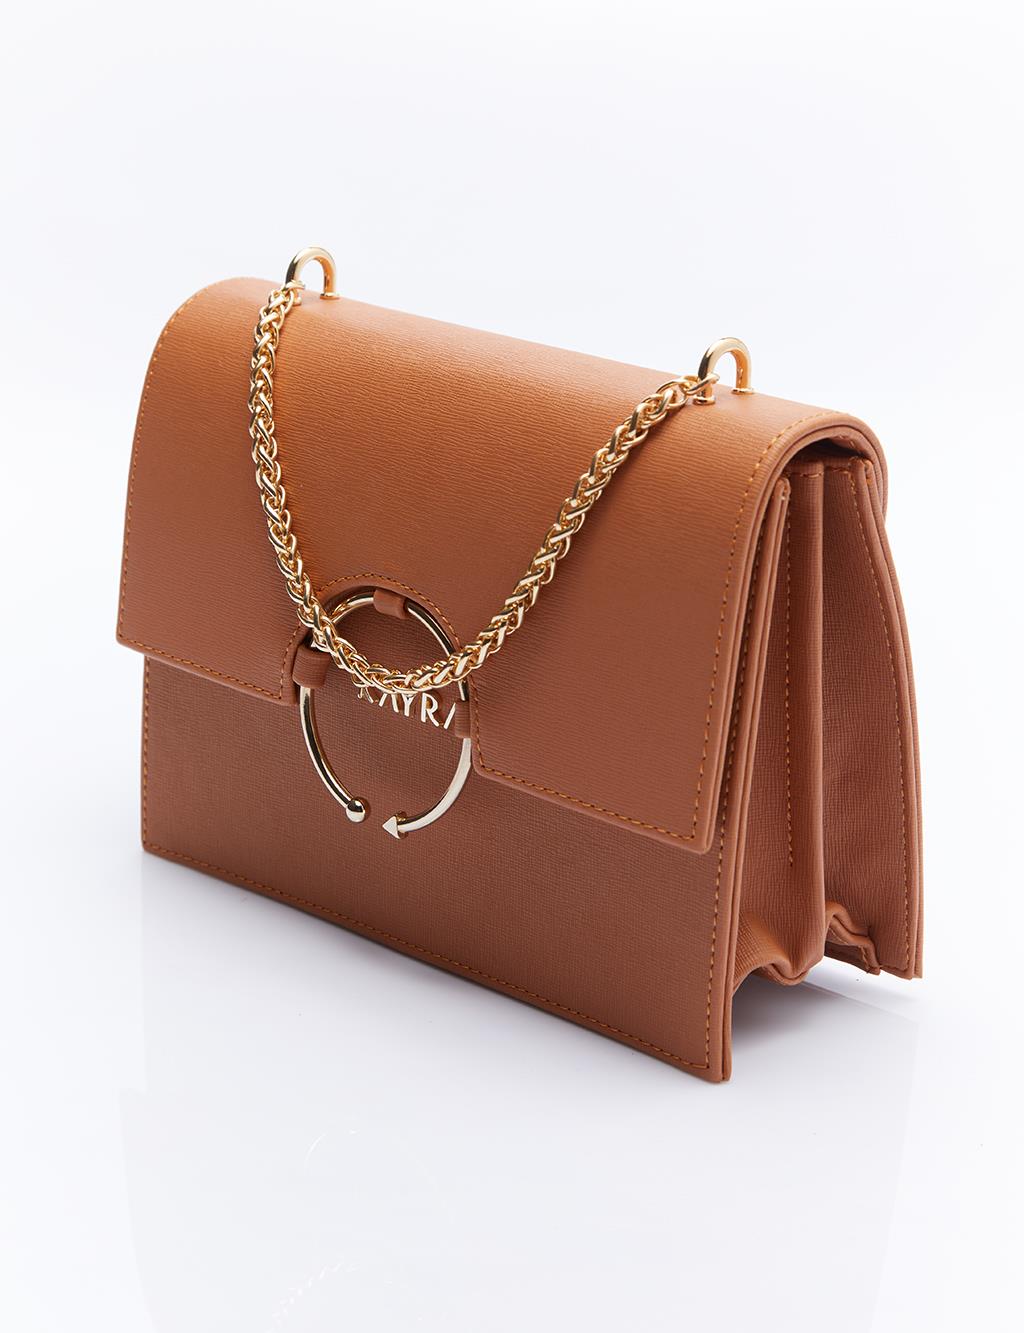 Дизайнерская сумка с ручкой-цепочкой, коричневая Kayra amesta taba cilt sandalet